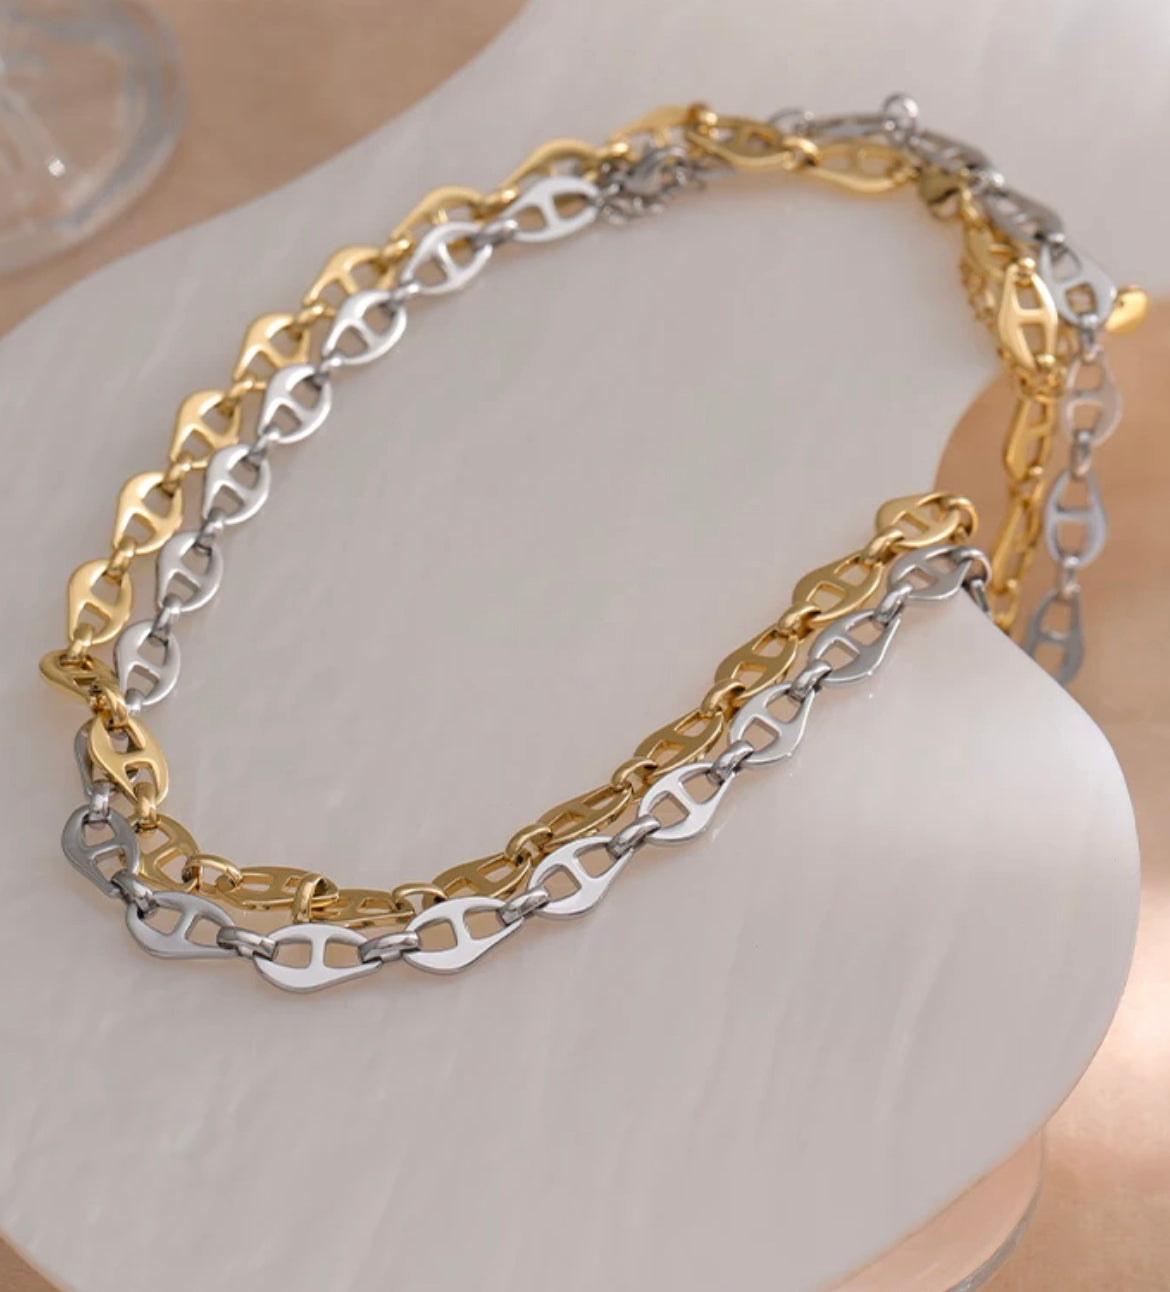 Gold vintage link necklace